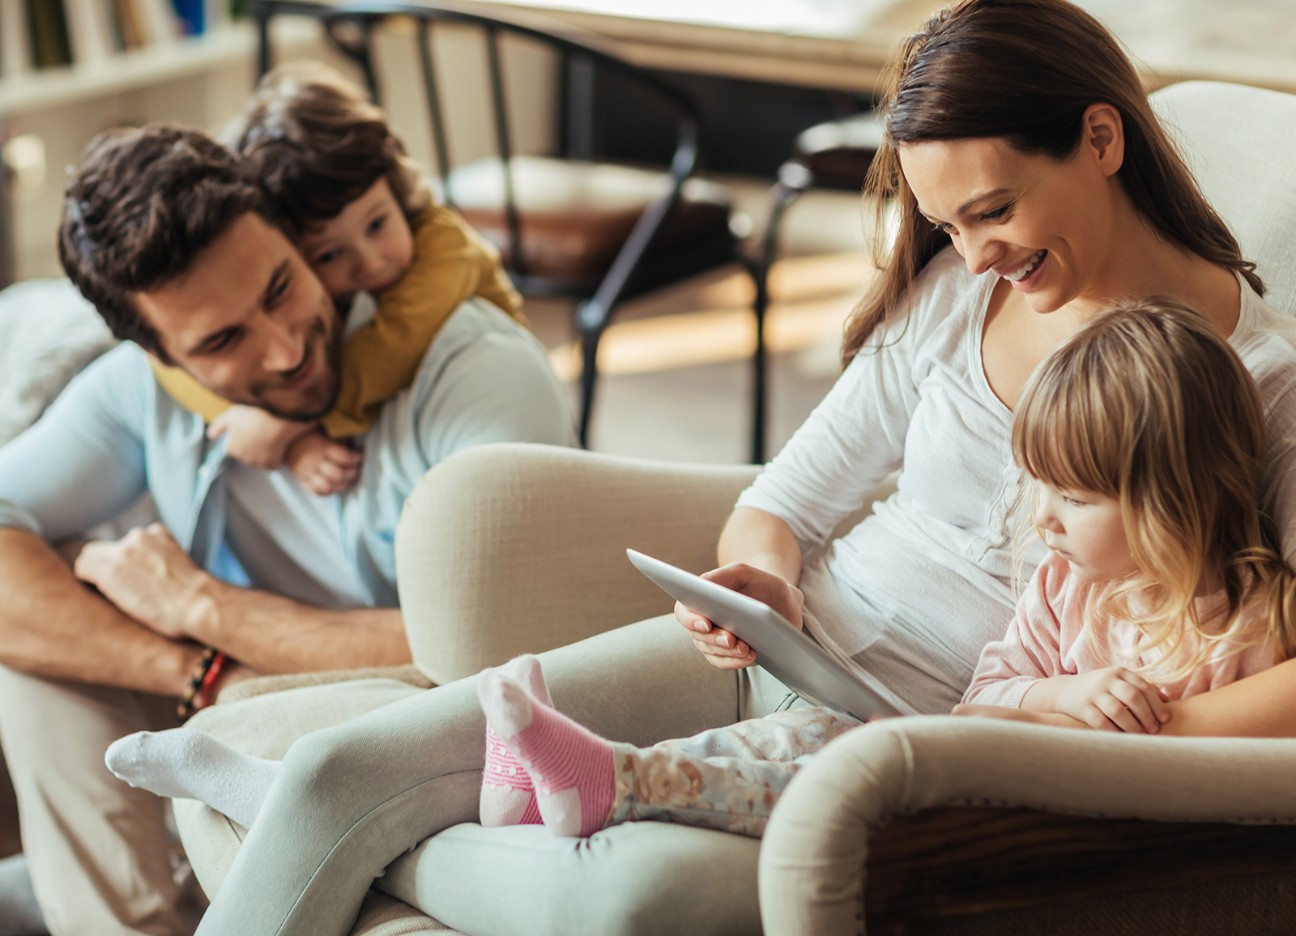 Eine junge Familie, bestehend aus 4 Personen, sitzt zusammen auf dem Sofa. Mutter und Tochter schauen in ein Tablet, Vater und Sohn schauen lächelnd zu ihnen rüber.